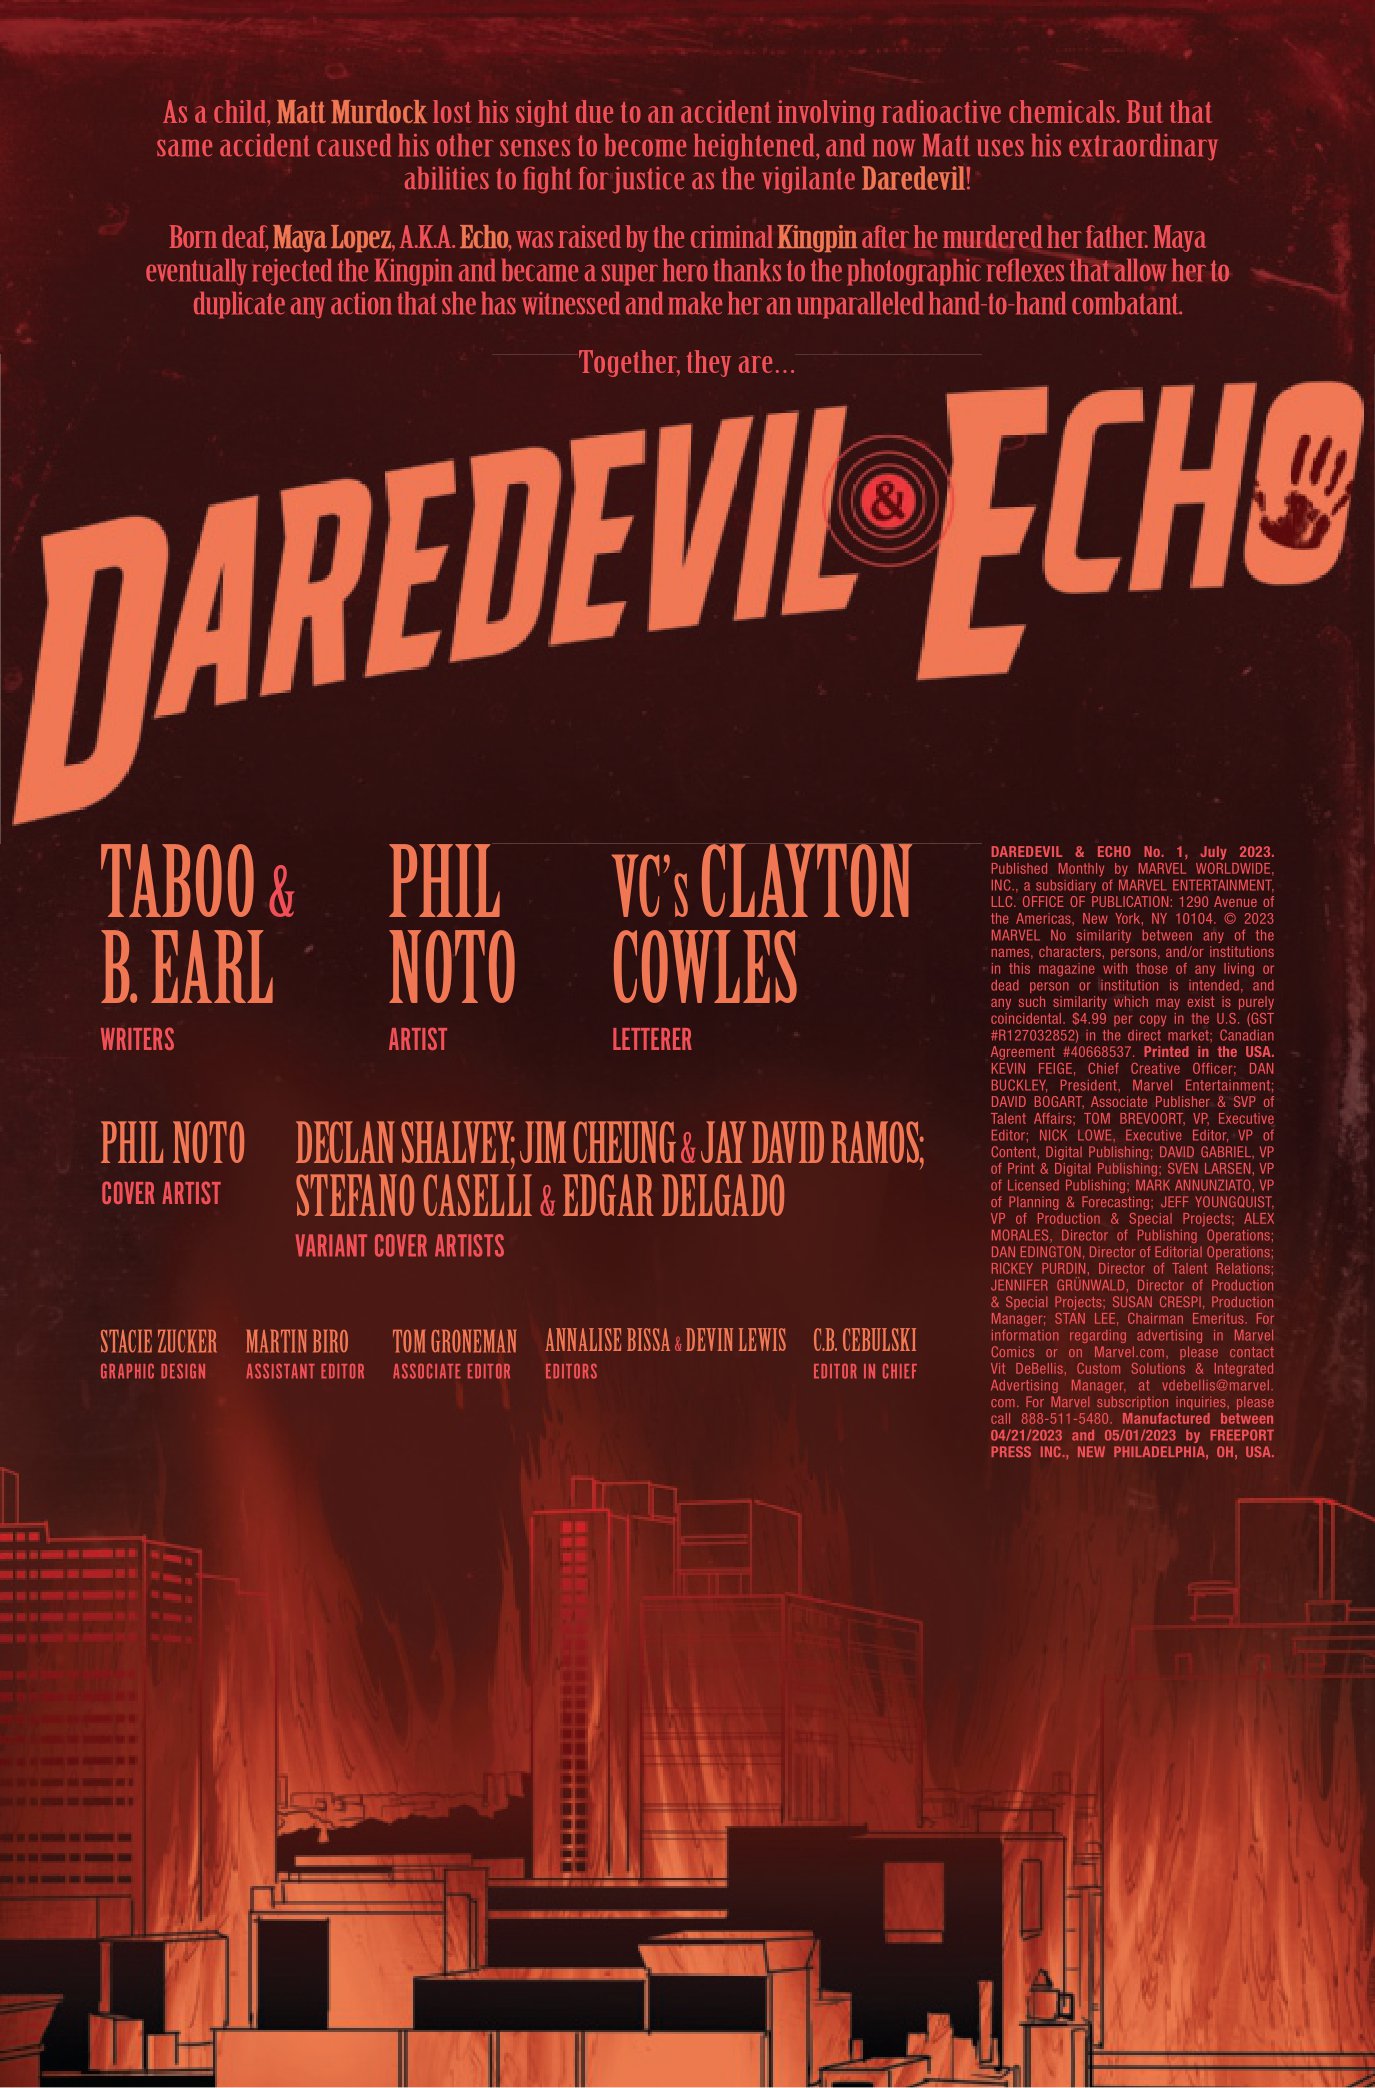 daredevil-echo-1-p1